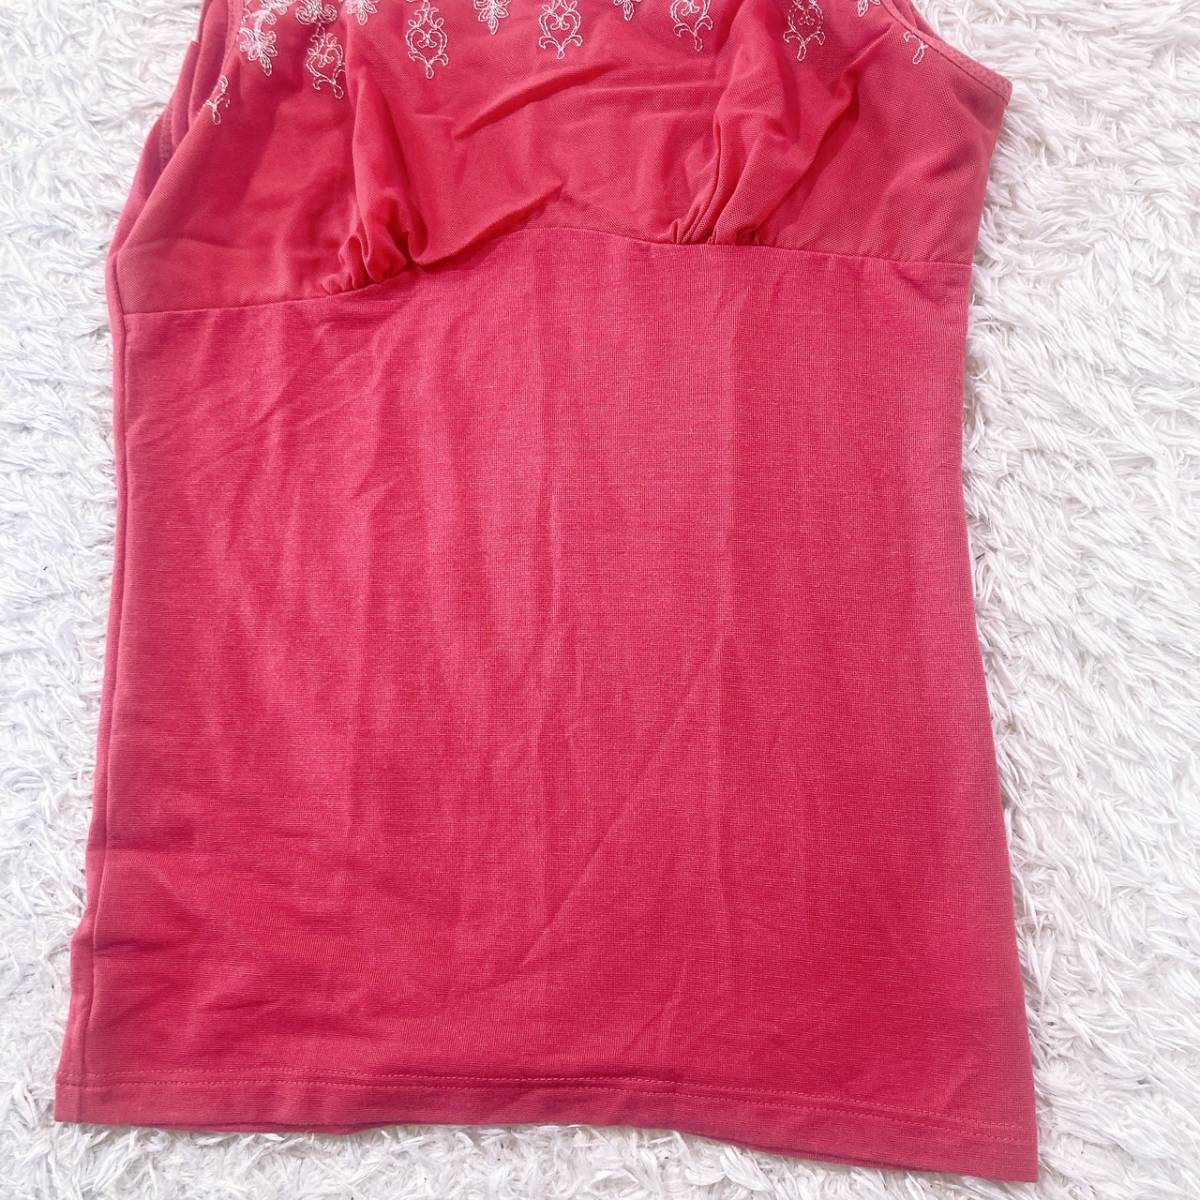 レディースM トップス 袖なしシャツ レッド 赤 ノースリーブ レース 模様 薄手 夏物 抜け感 フーシャピンク 【25649】